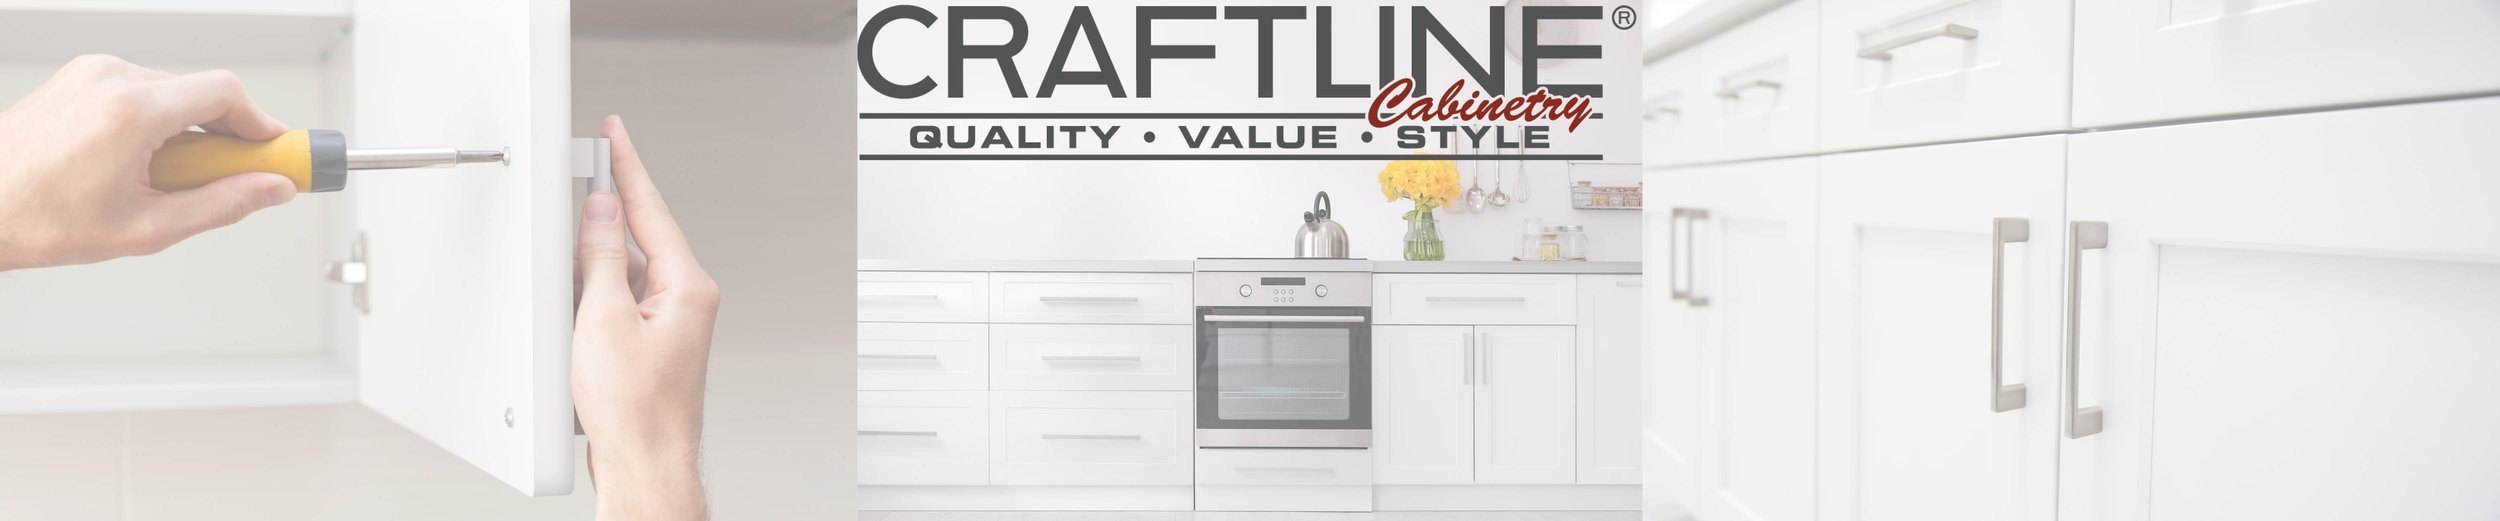 Craftline Cabinetry website banner